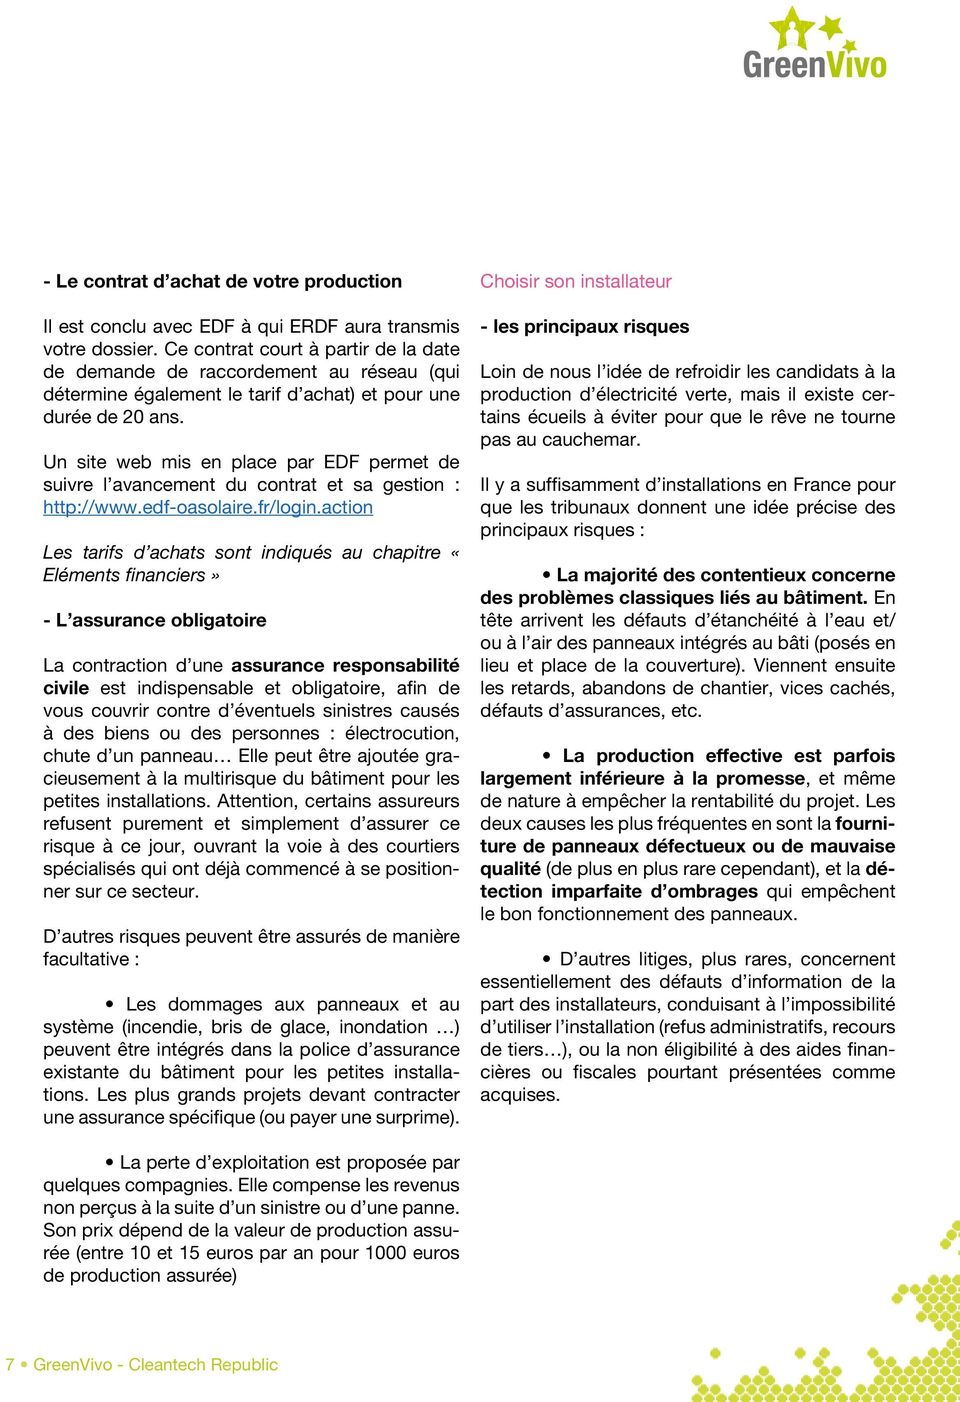 Un site web mis en place par EDF permet de suivre l avancement du contrat et sa gestion : http://www.edf-oasolaire.fr/login.